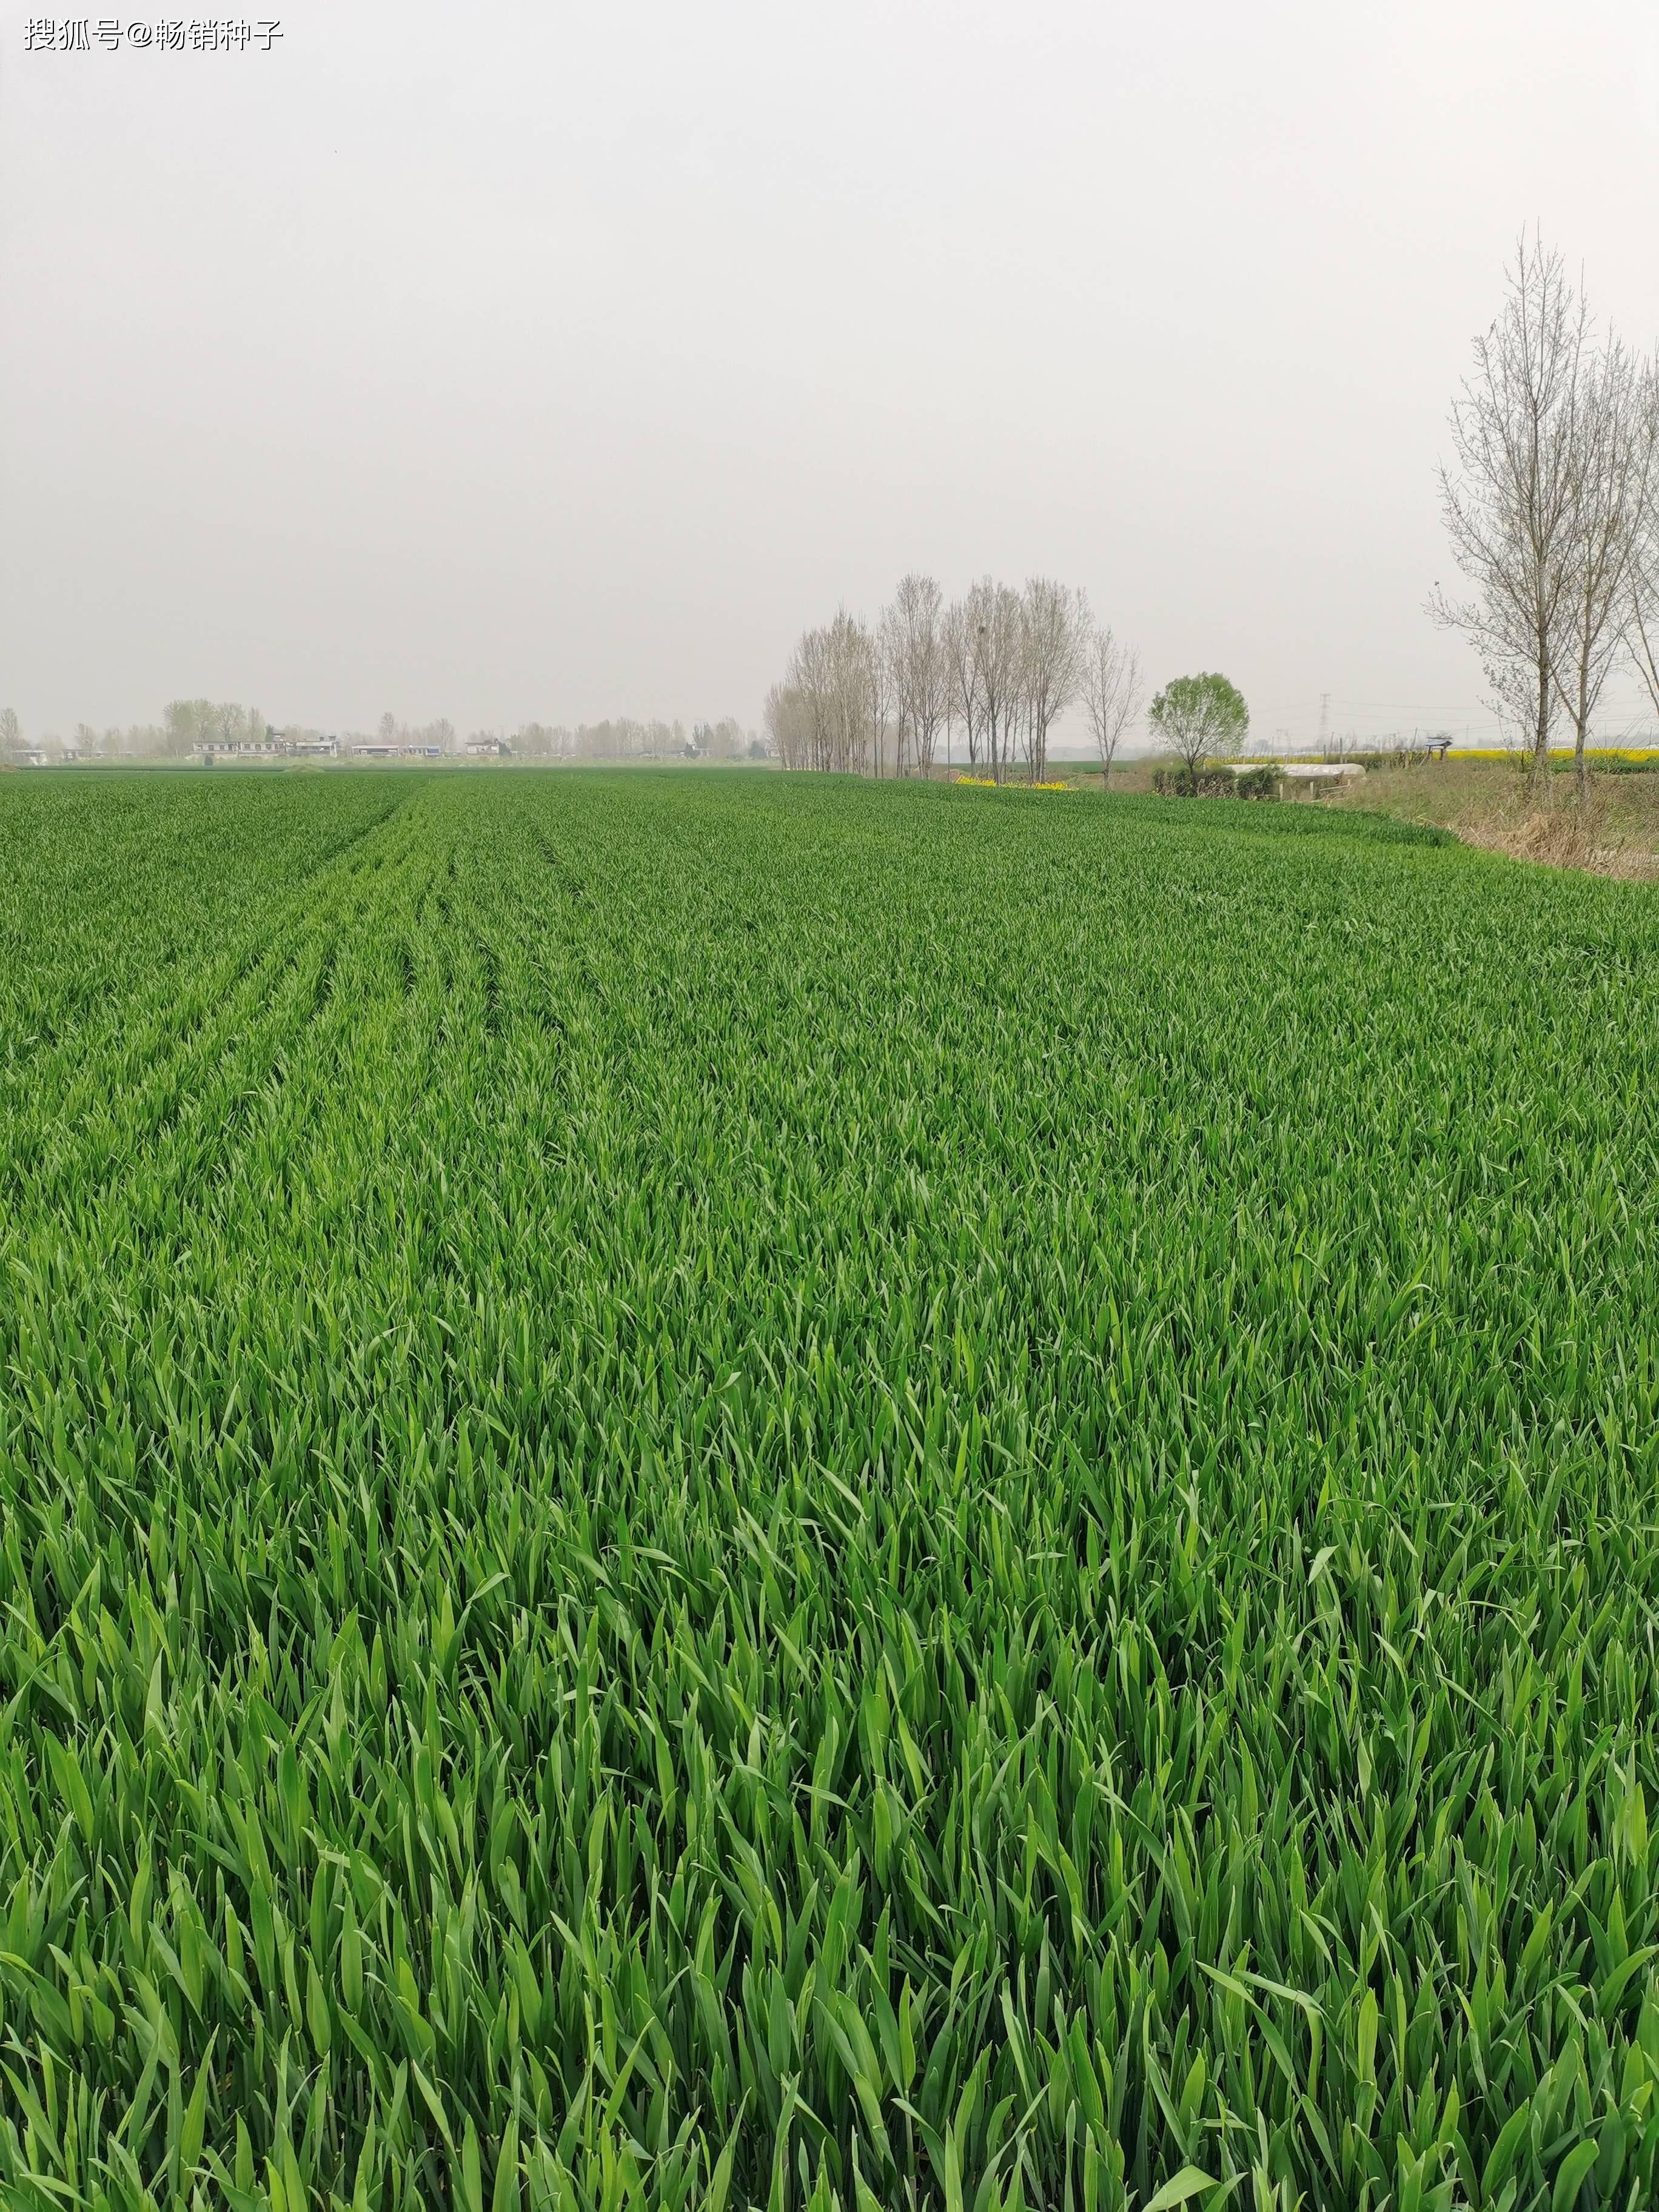 温度适宜,土壤墒情好,对小麦生长十分有利,中旬后,小麦陆续将进入孕穗